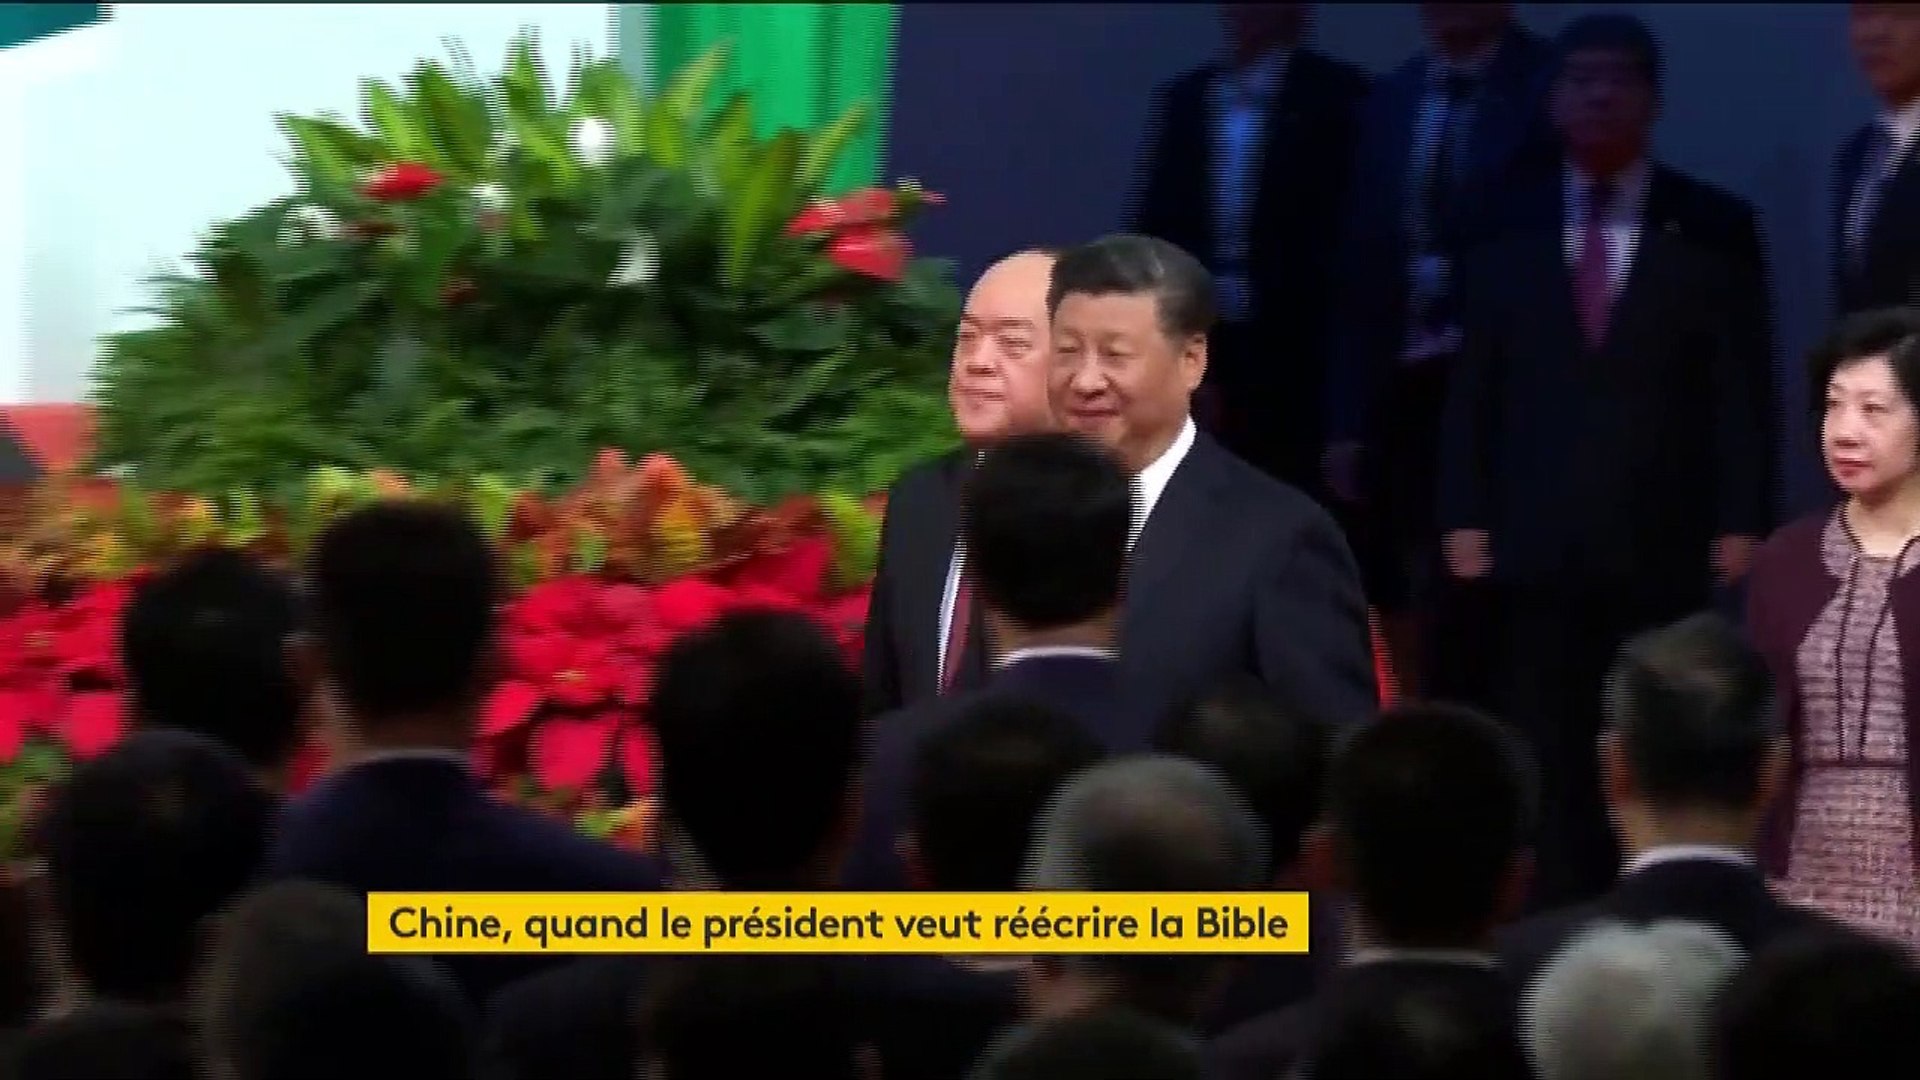 Le président chinois veut réécrire la Bible ! X1080